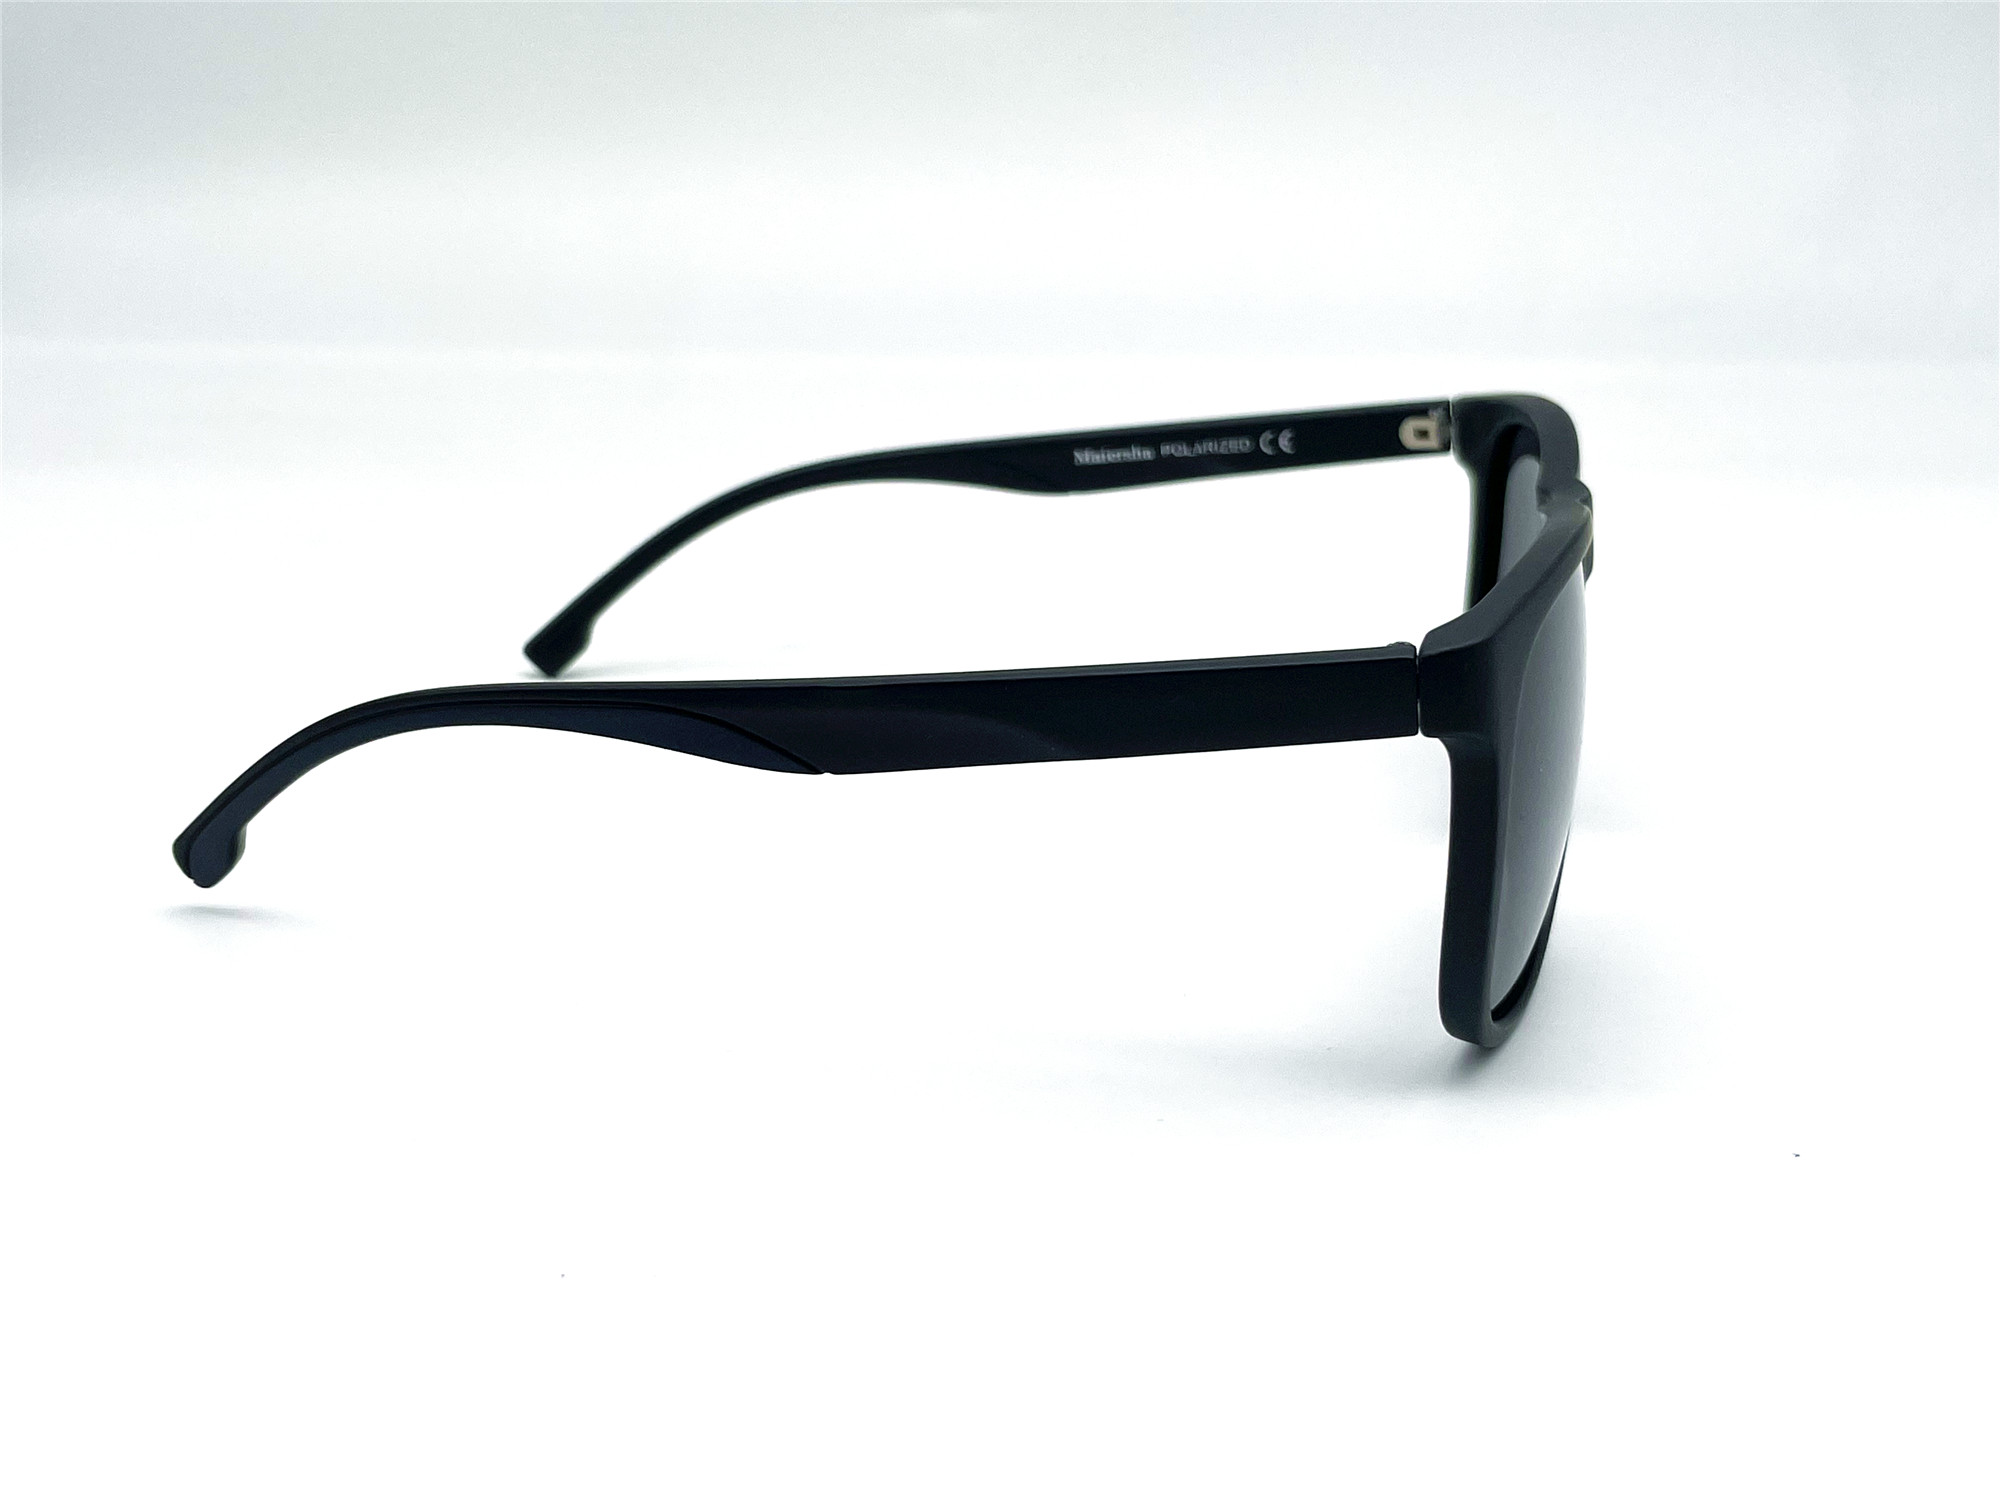  Солнцезащитные очки картинка Мужские Maiersha Polarized Стандартные P5056-C4 